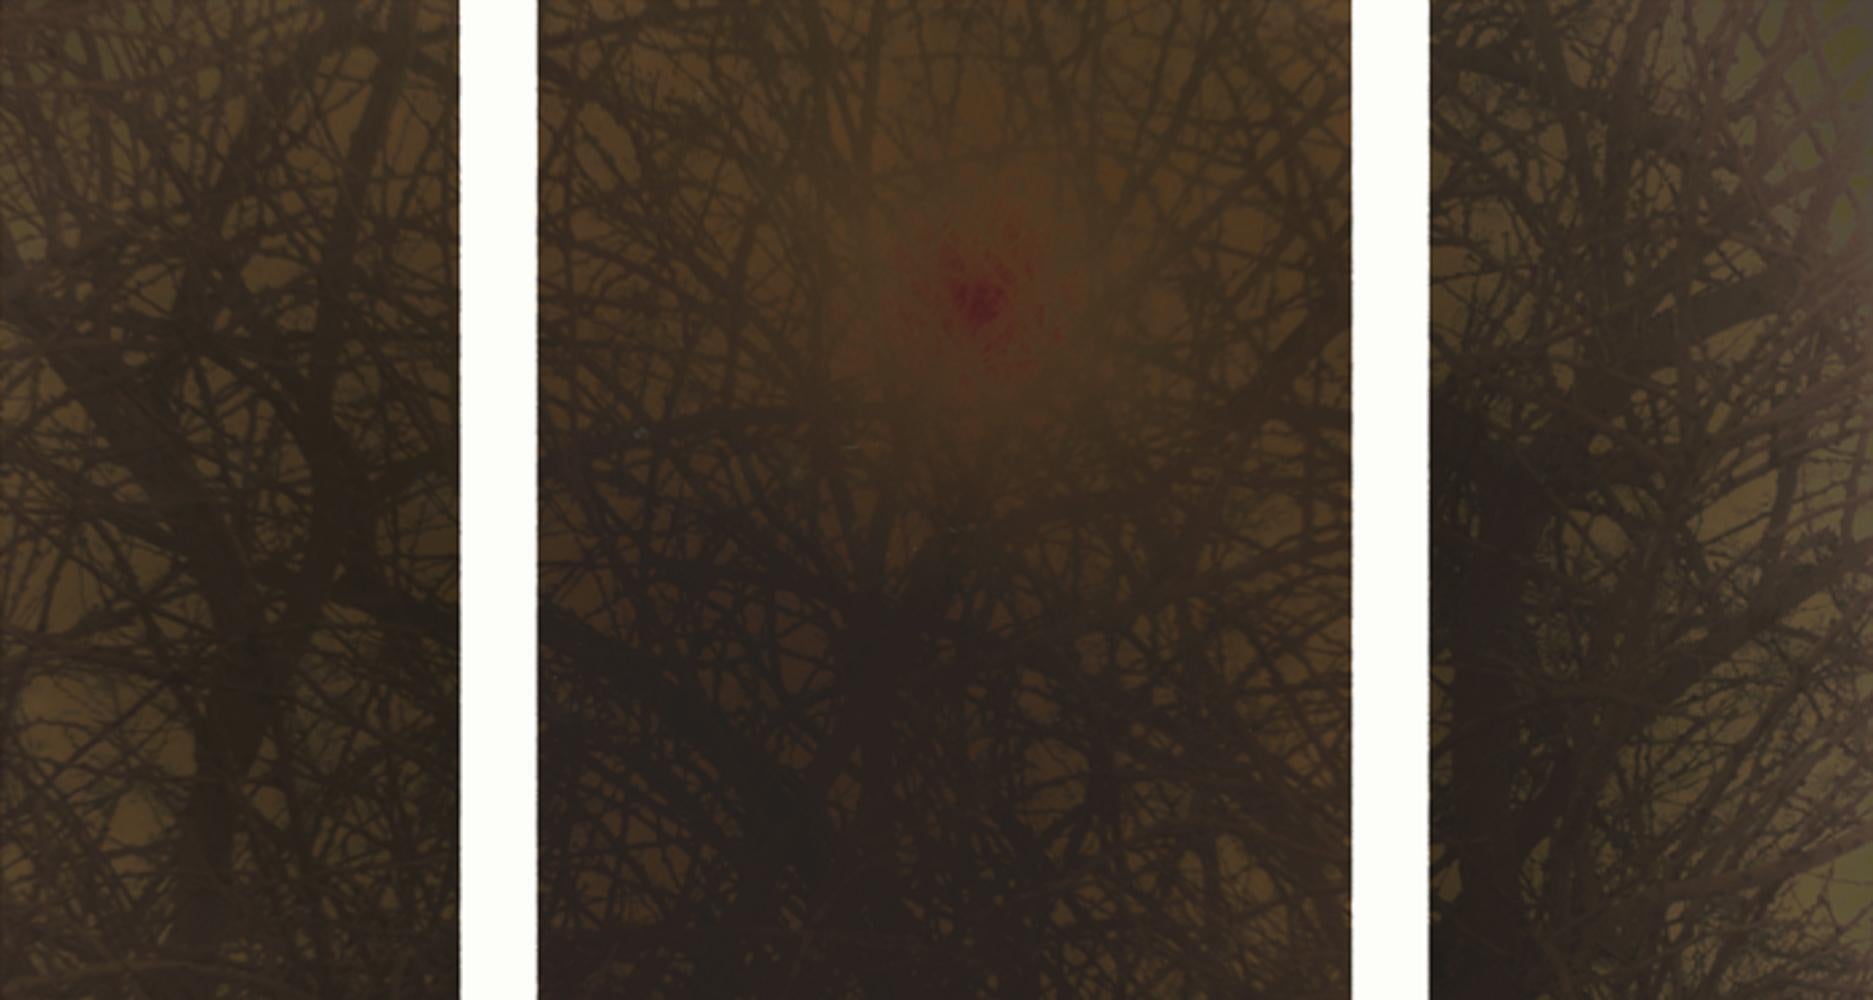 Ori Gersht Landscape Photograph - Haze (Triptych)